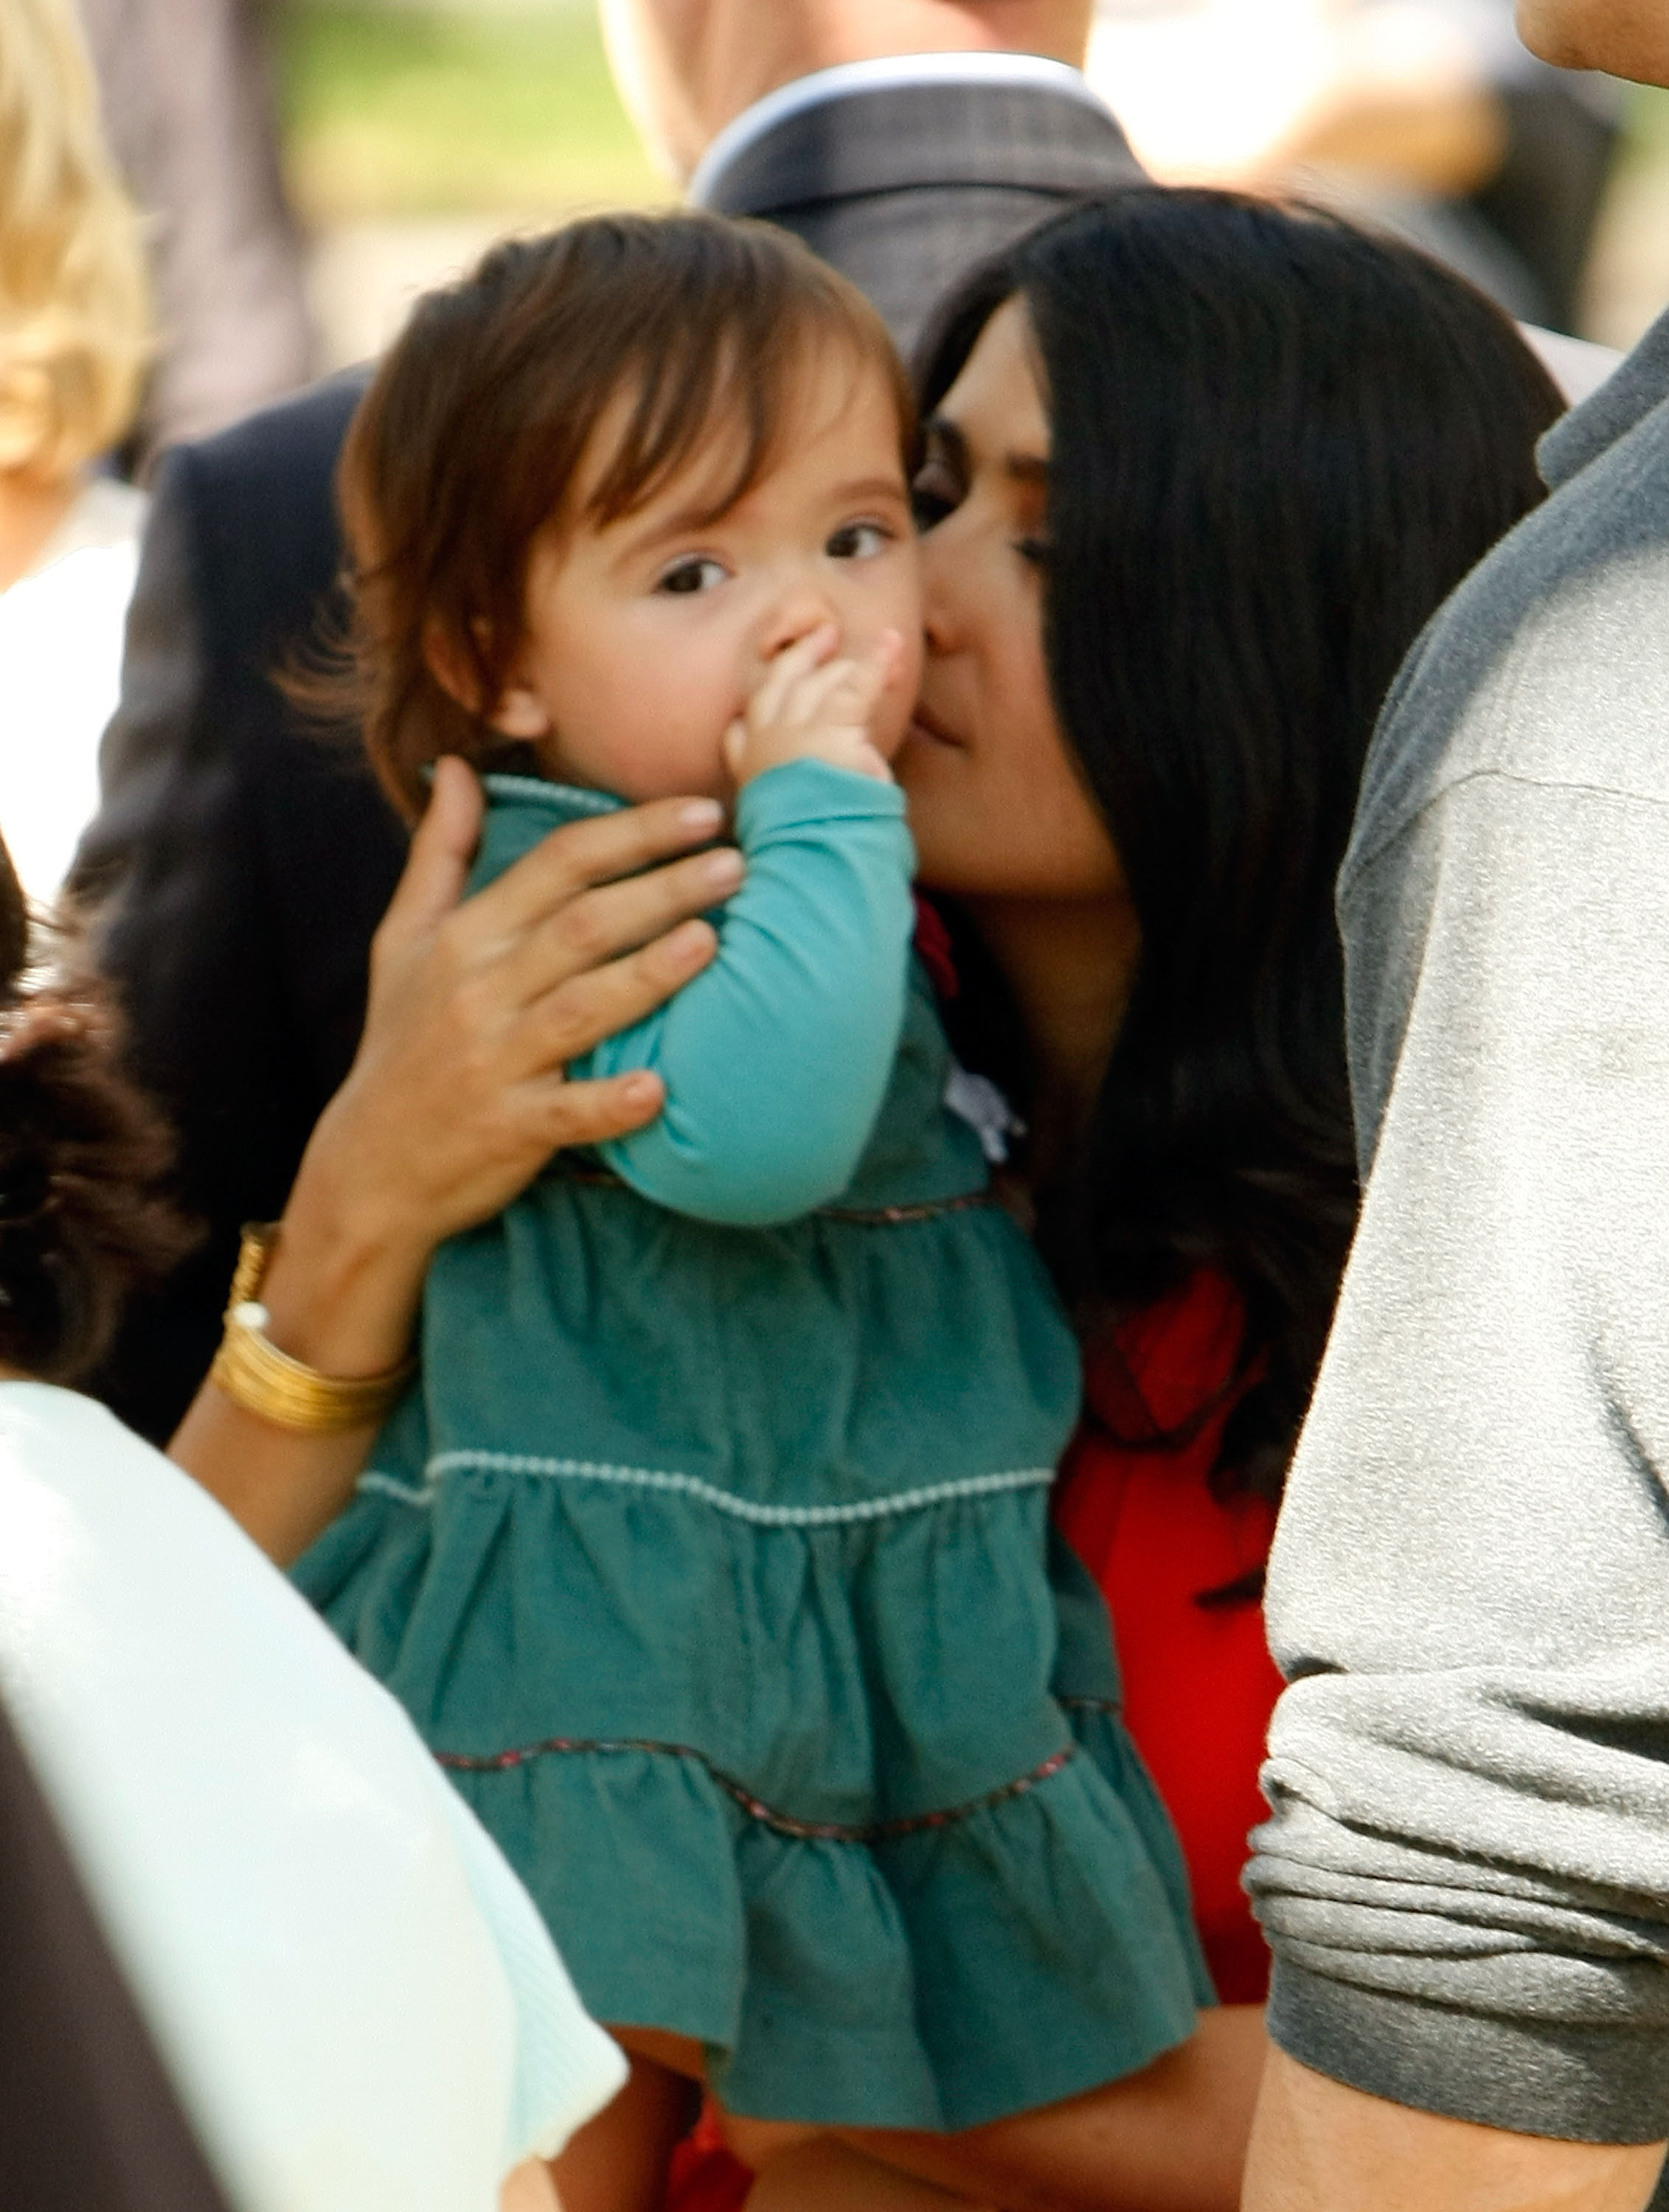 Salma Hayek et son bébé Valentina sur le tournage de "30 Rock" le 10 octobre 2008 à New York City | Source : Getty Images